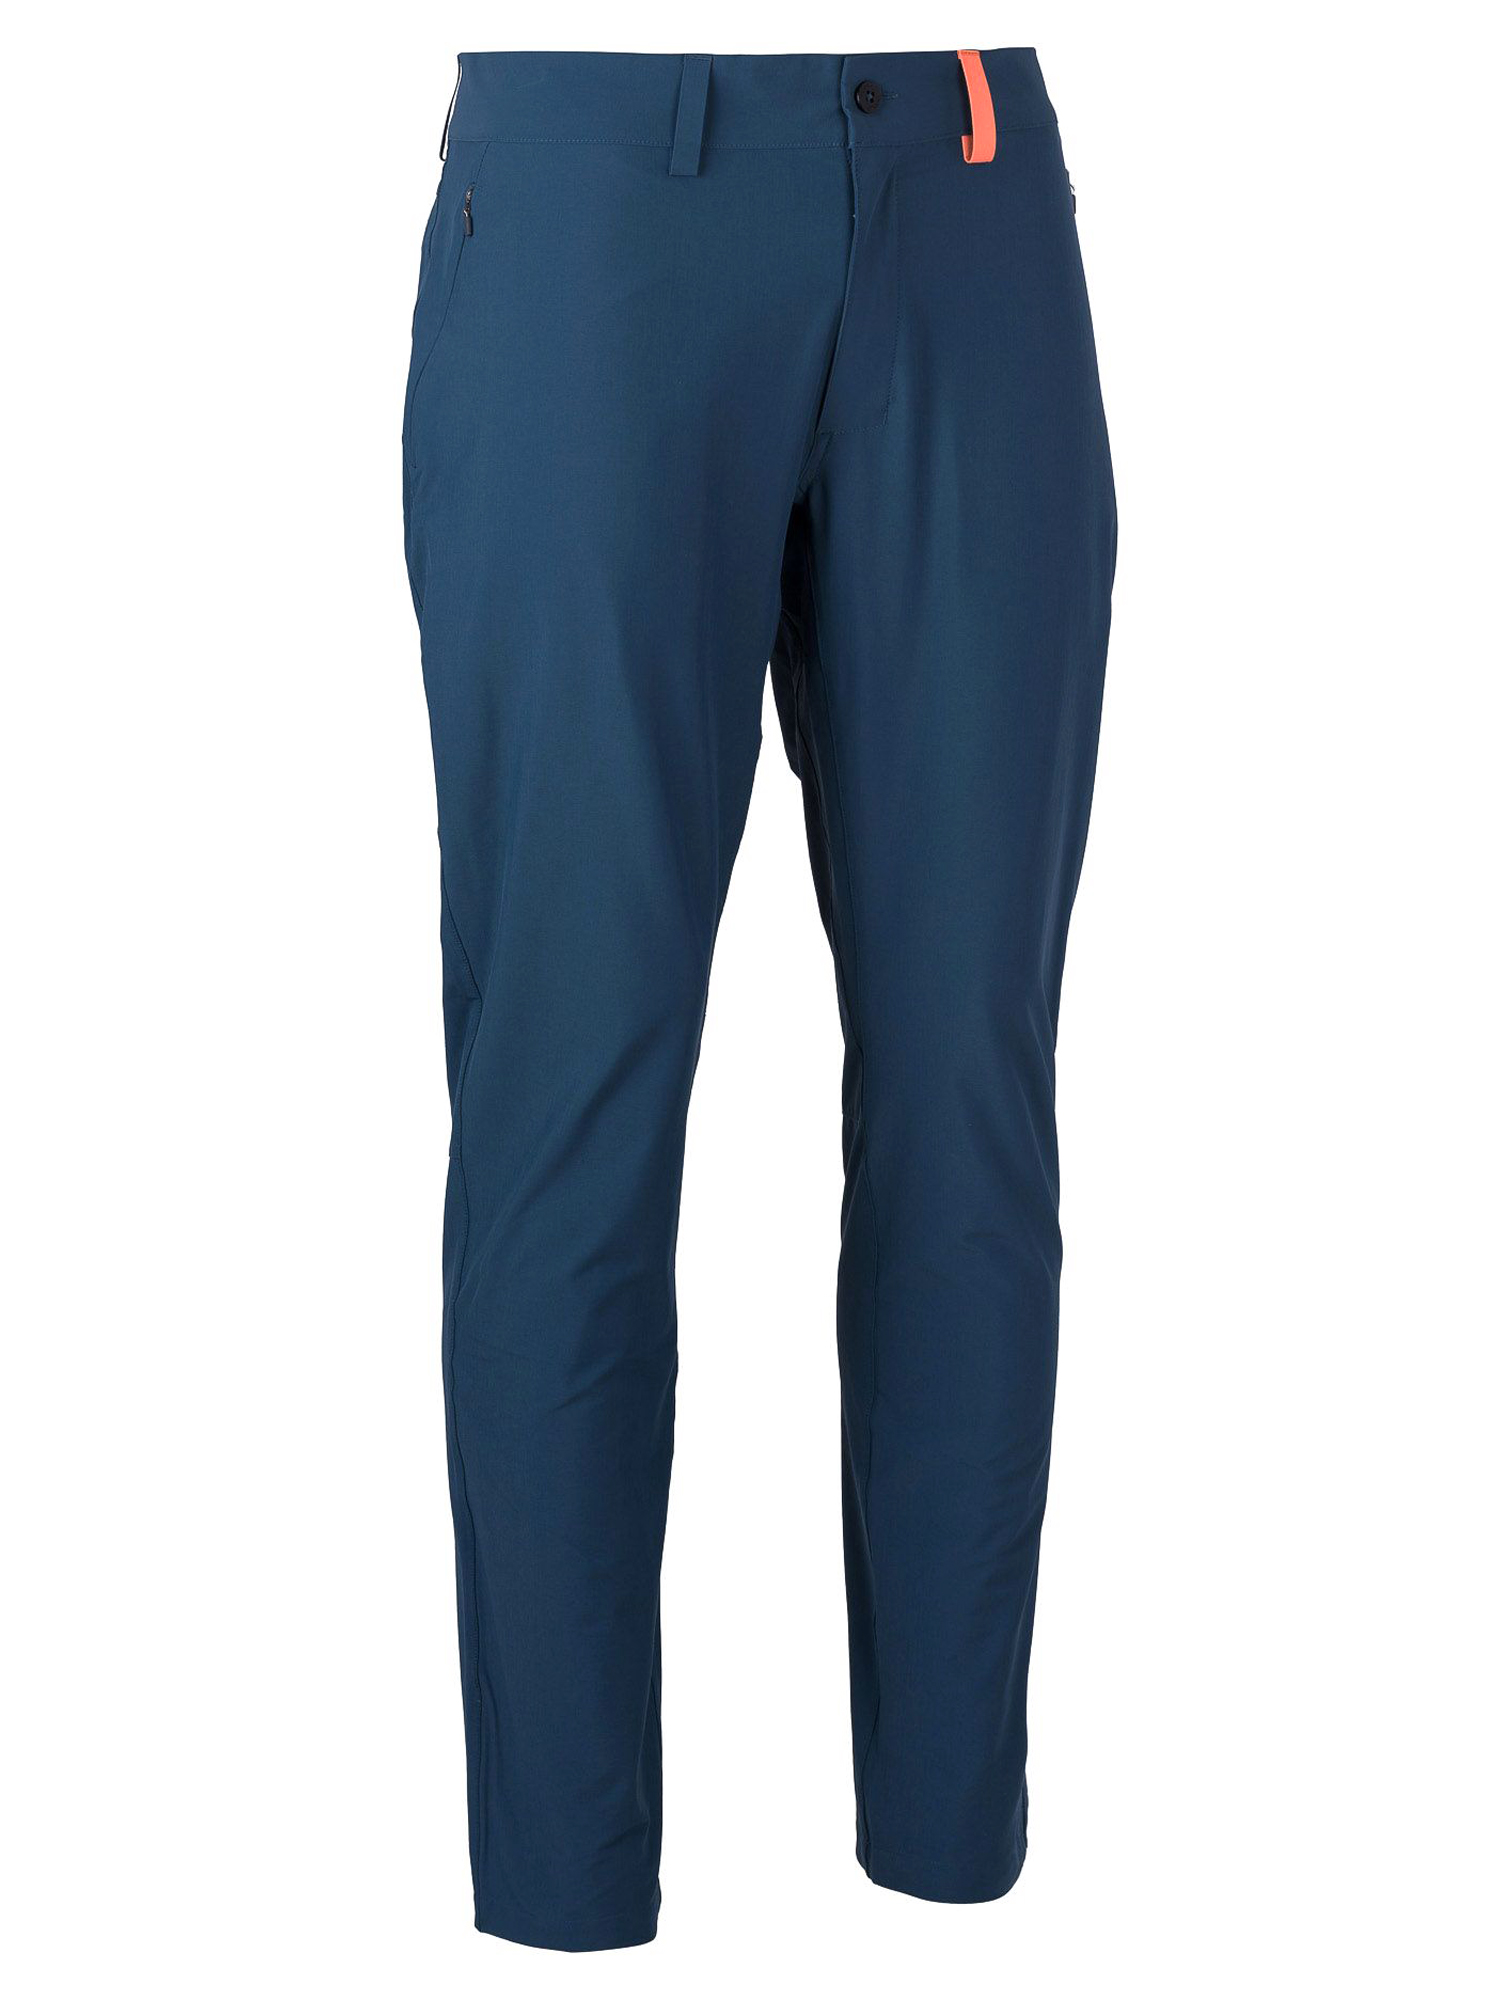 Спортивные брюки мужские Ternua Terra Pt M синие XL